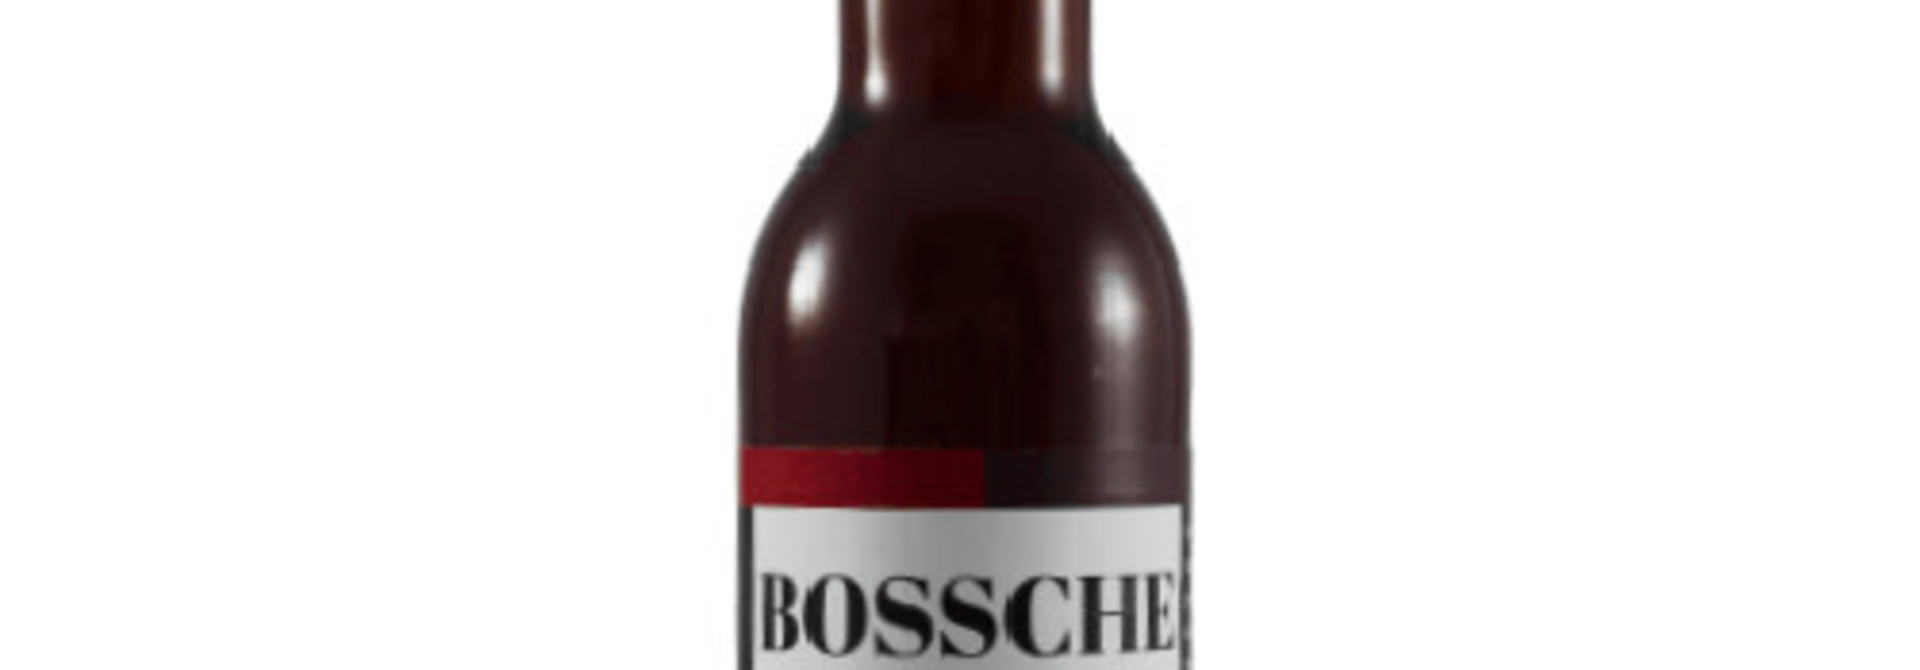 Bossche Posse Amber 33cl 7,8%